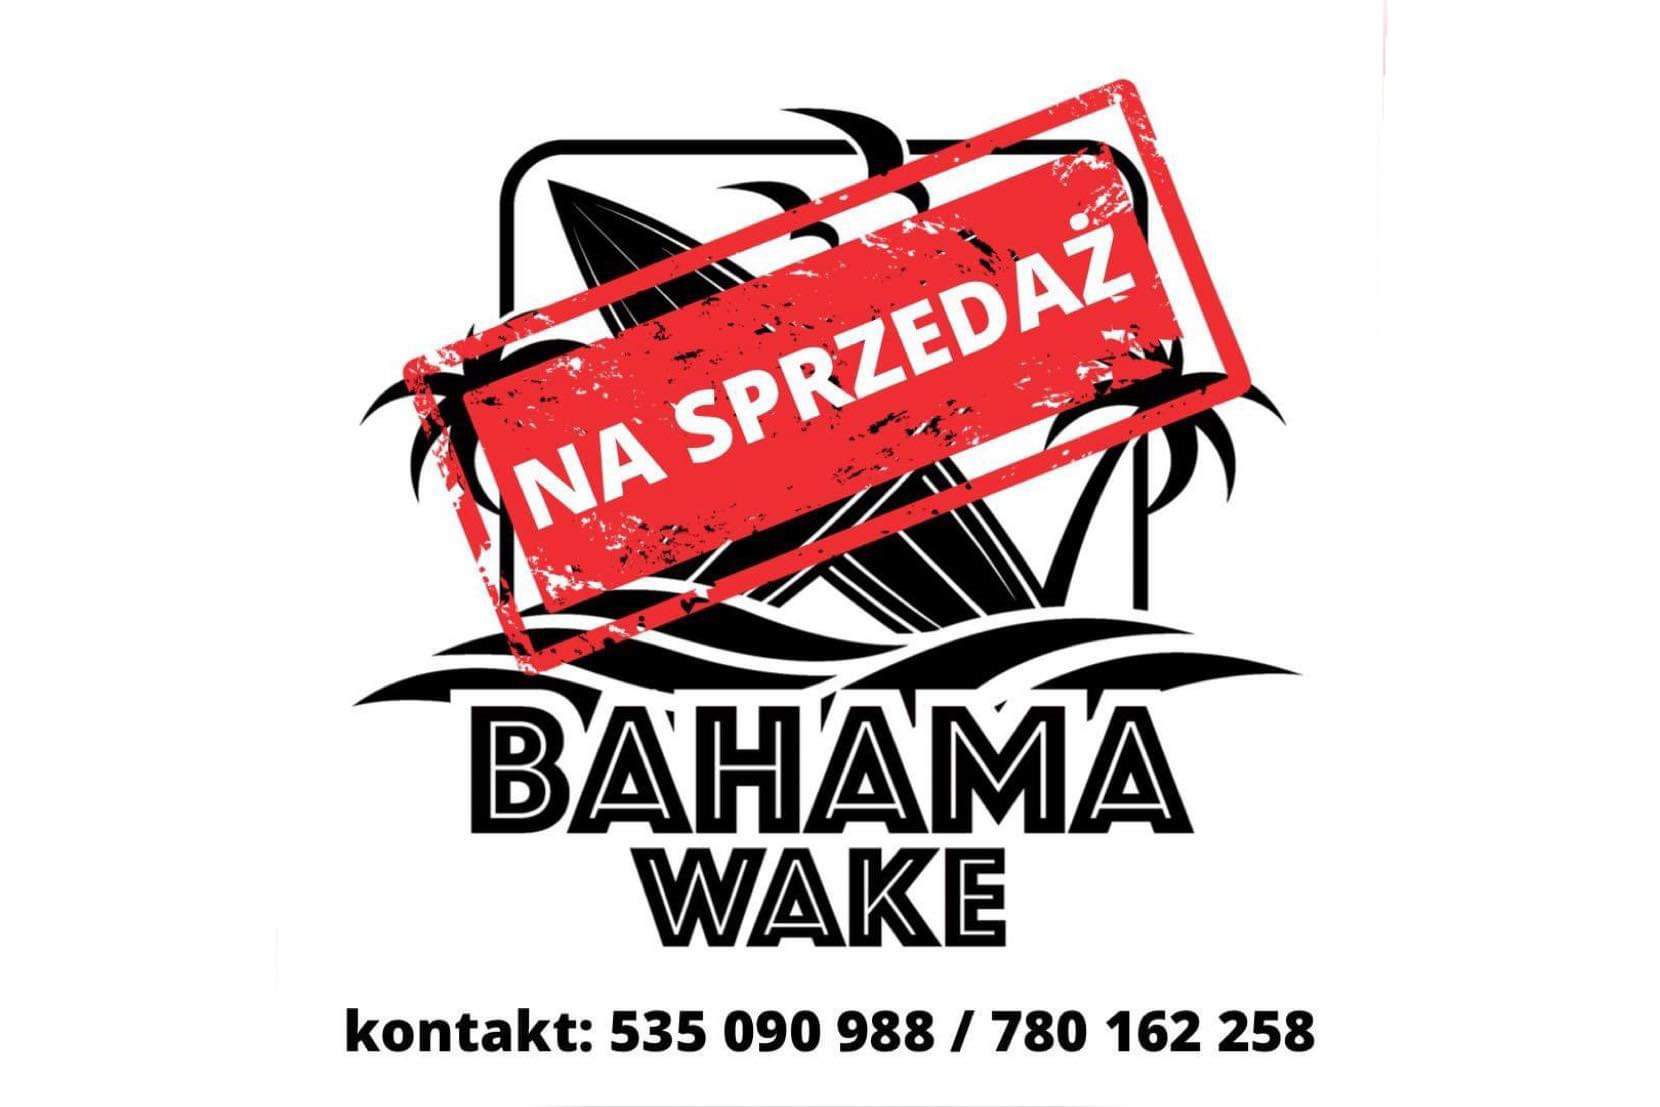  Bahama Wake na sprzedaż!